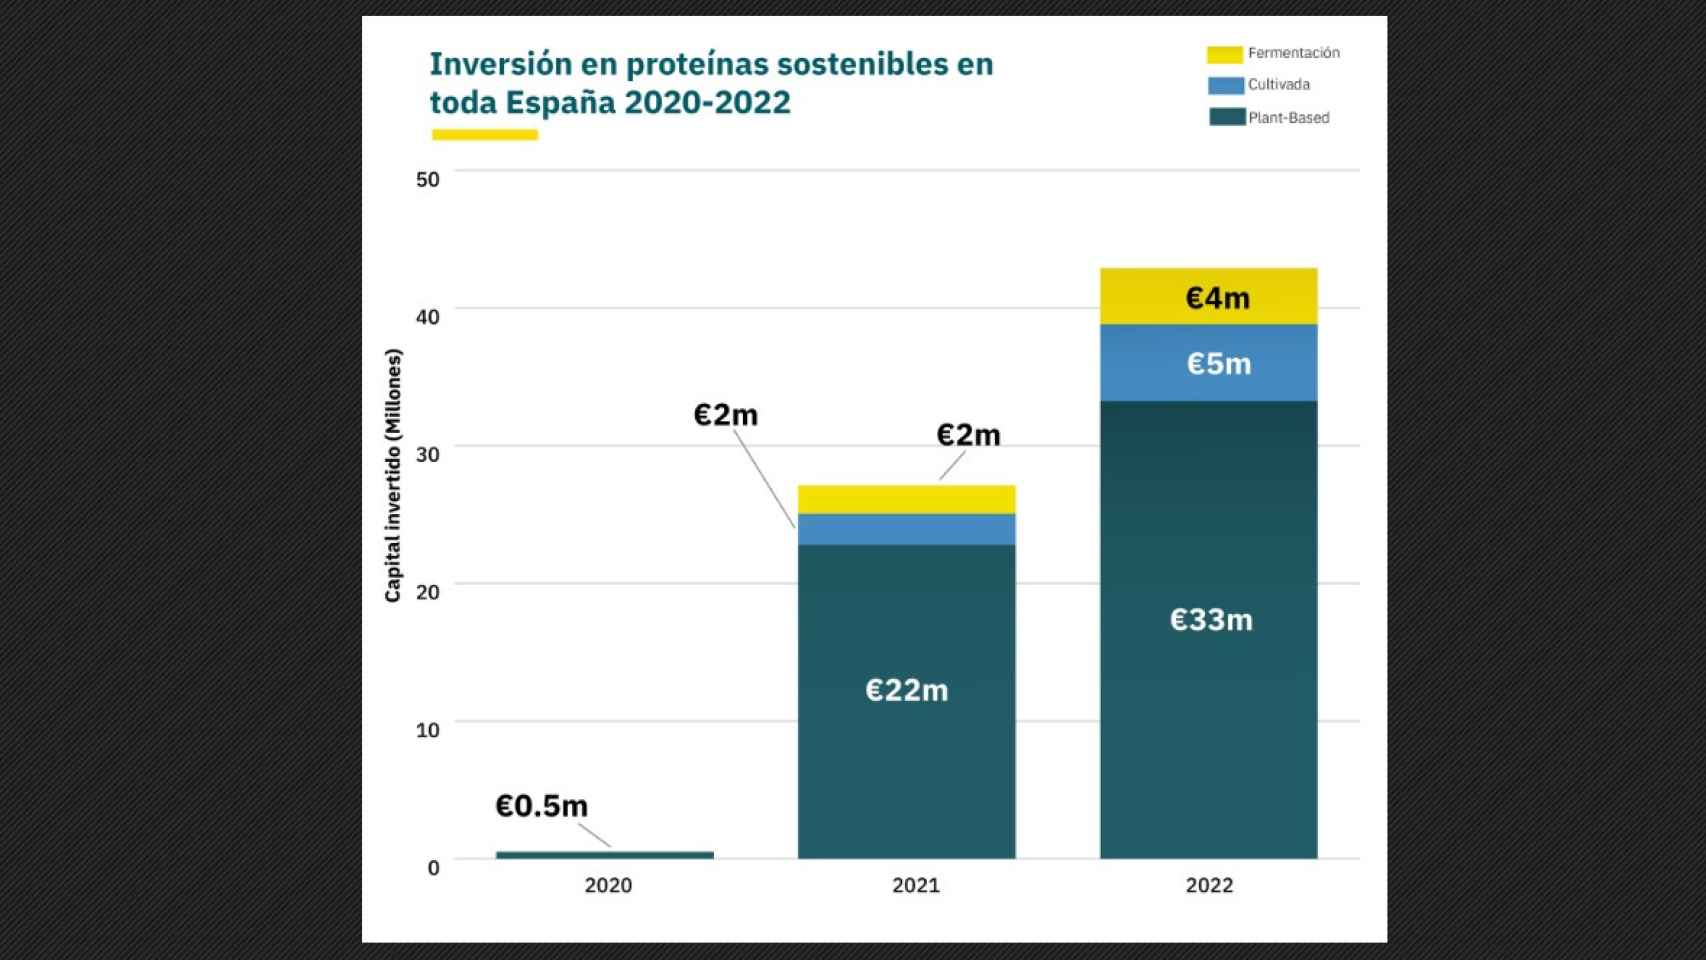 Inversión en las startups españolas de proteínas sostenibles.